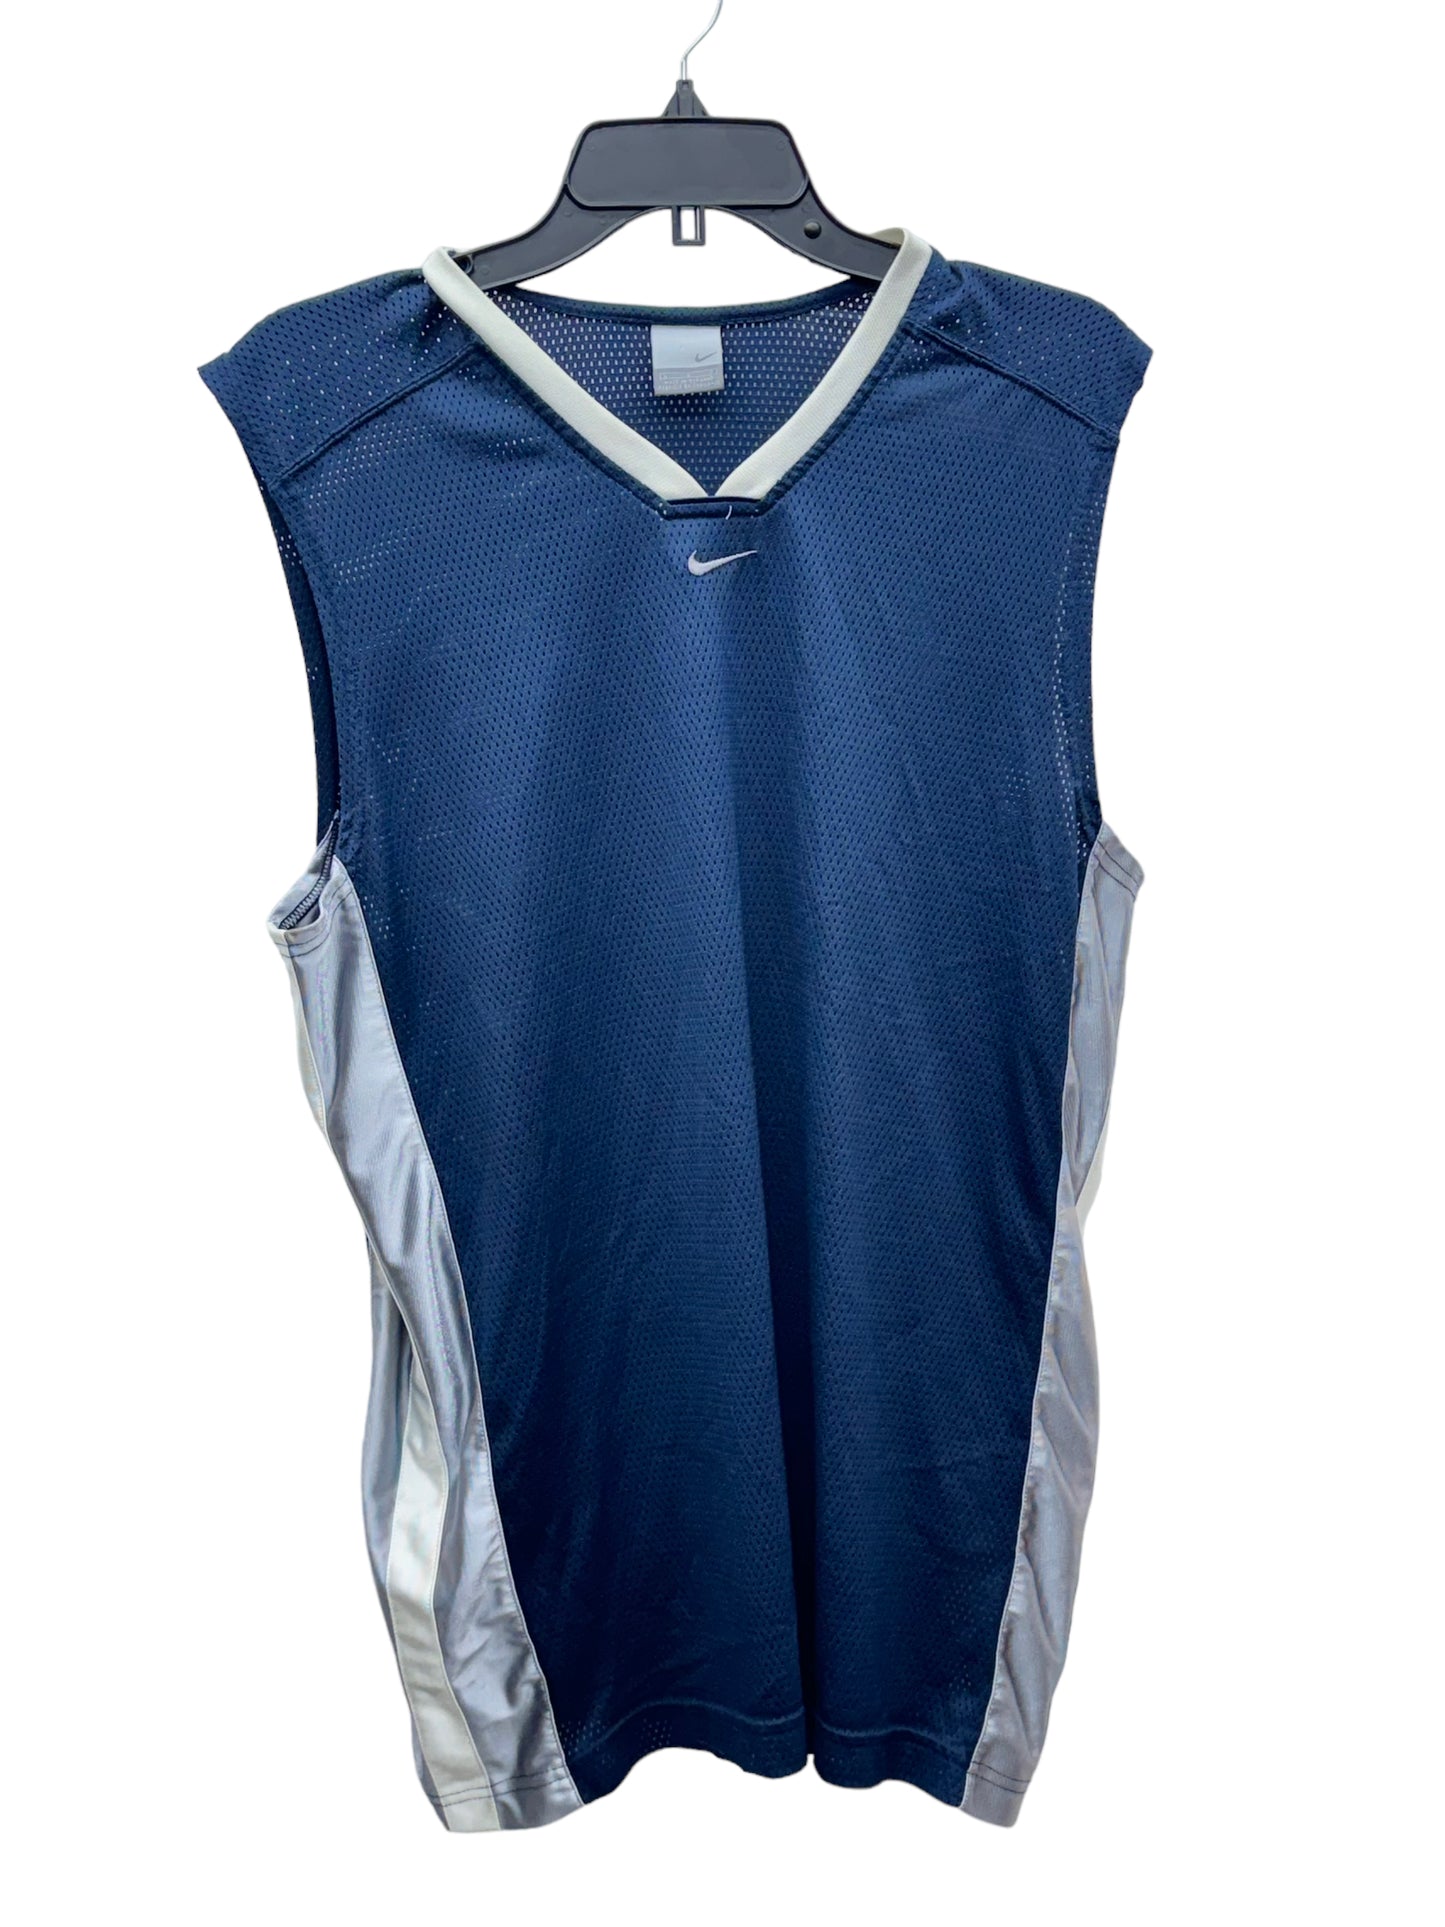 Vintage Nike Men’s Sleeveless Athletic T-Shirt Blue - Size Large